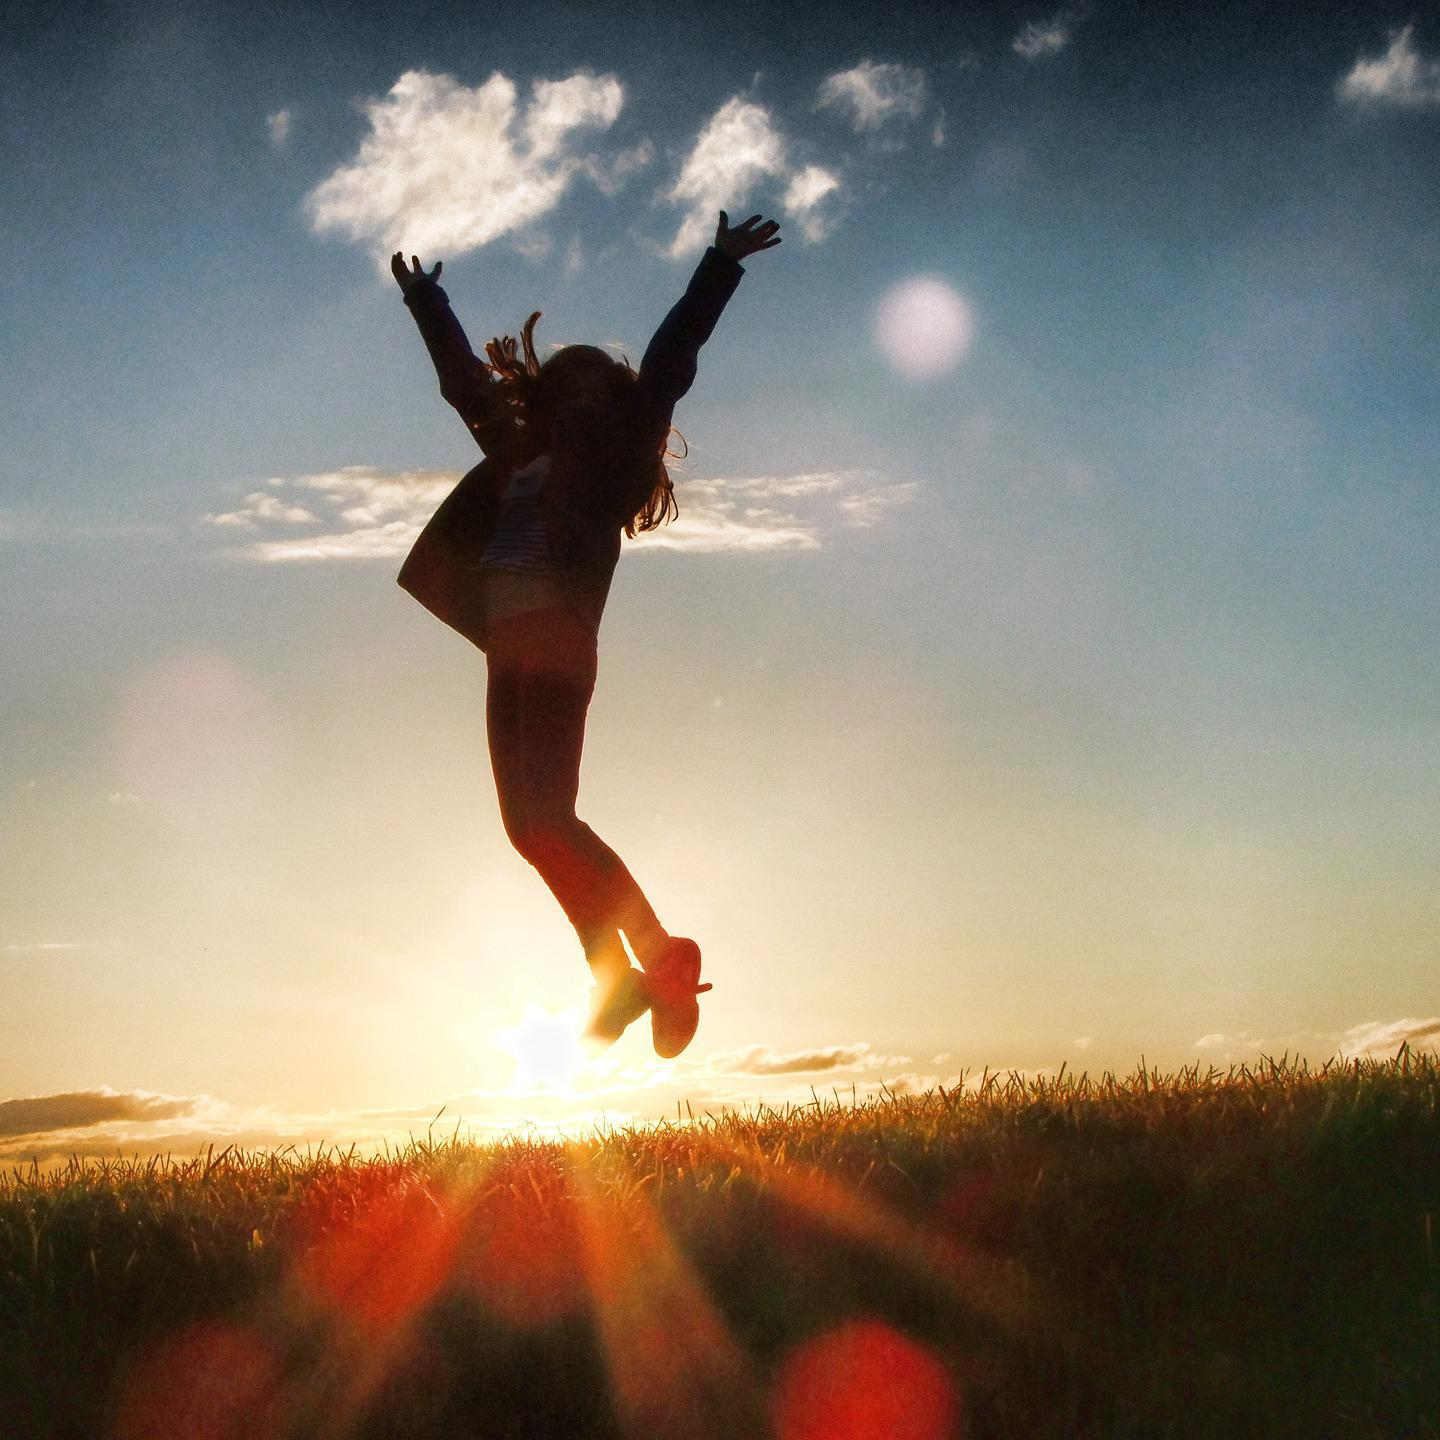 석양-잔디밭-하늘-두 팔-벌려-점프하는-여성